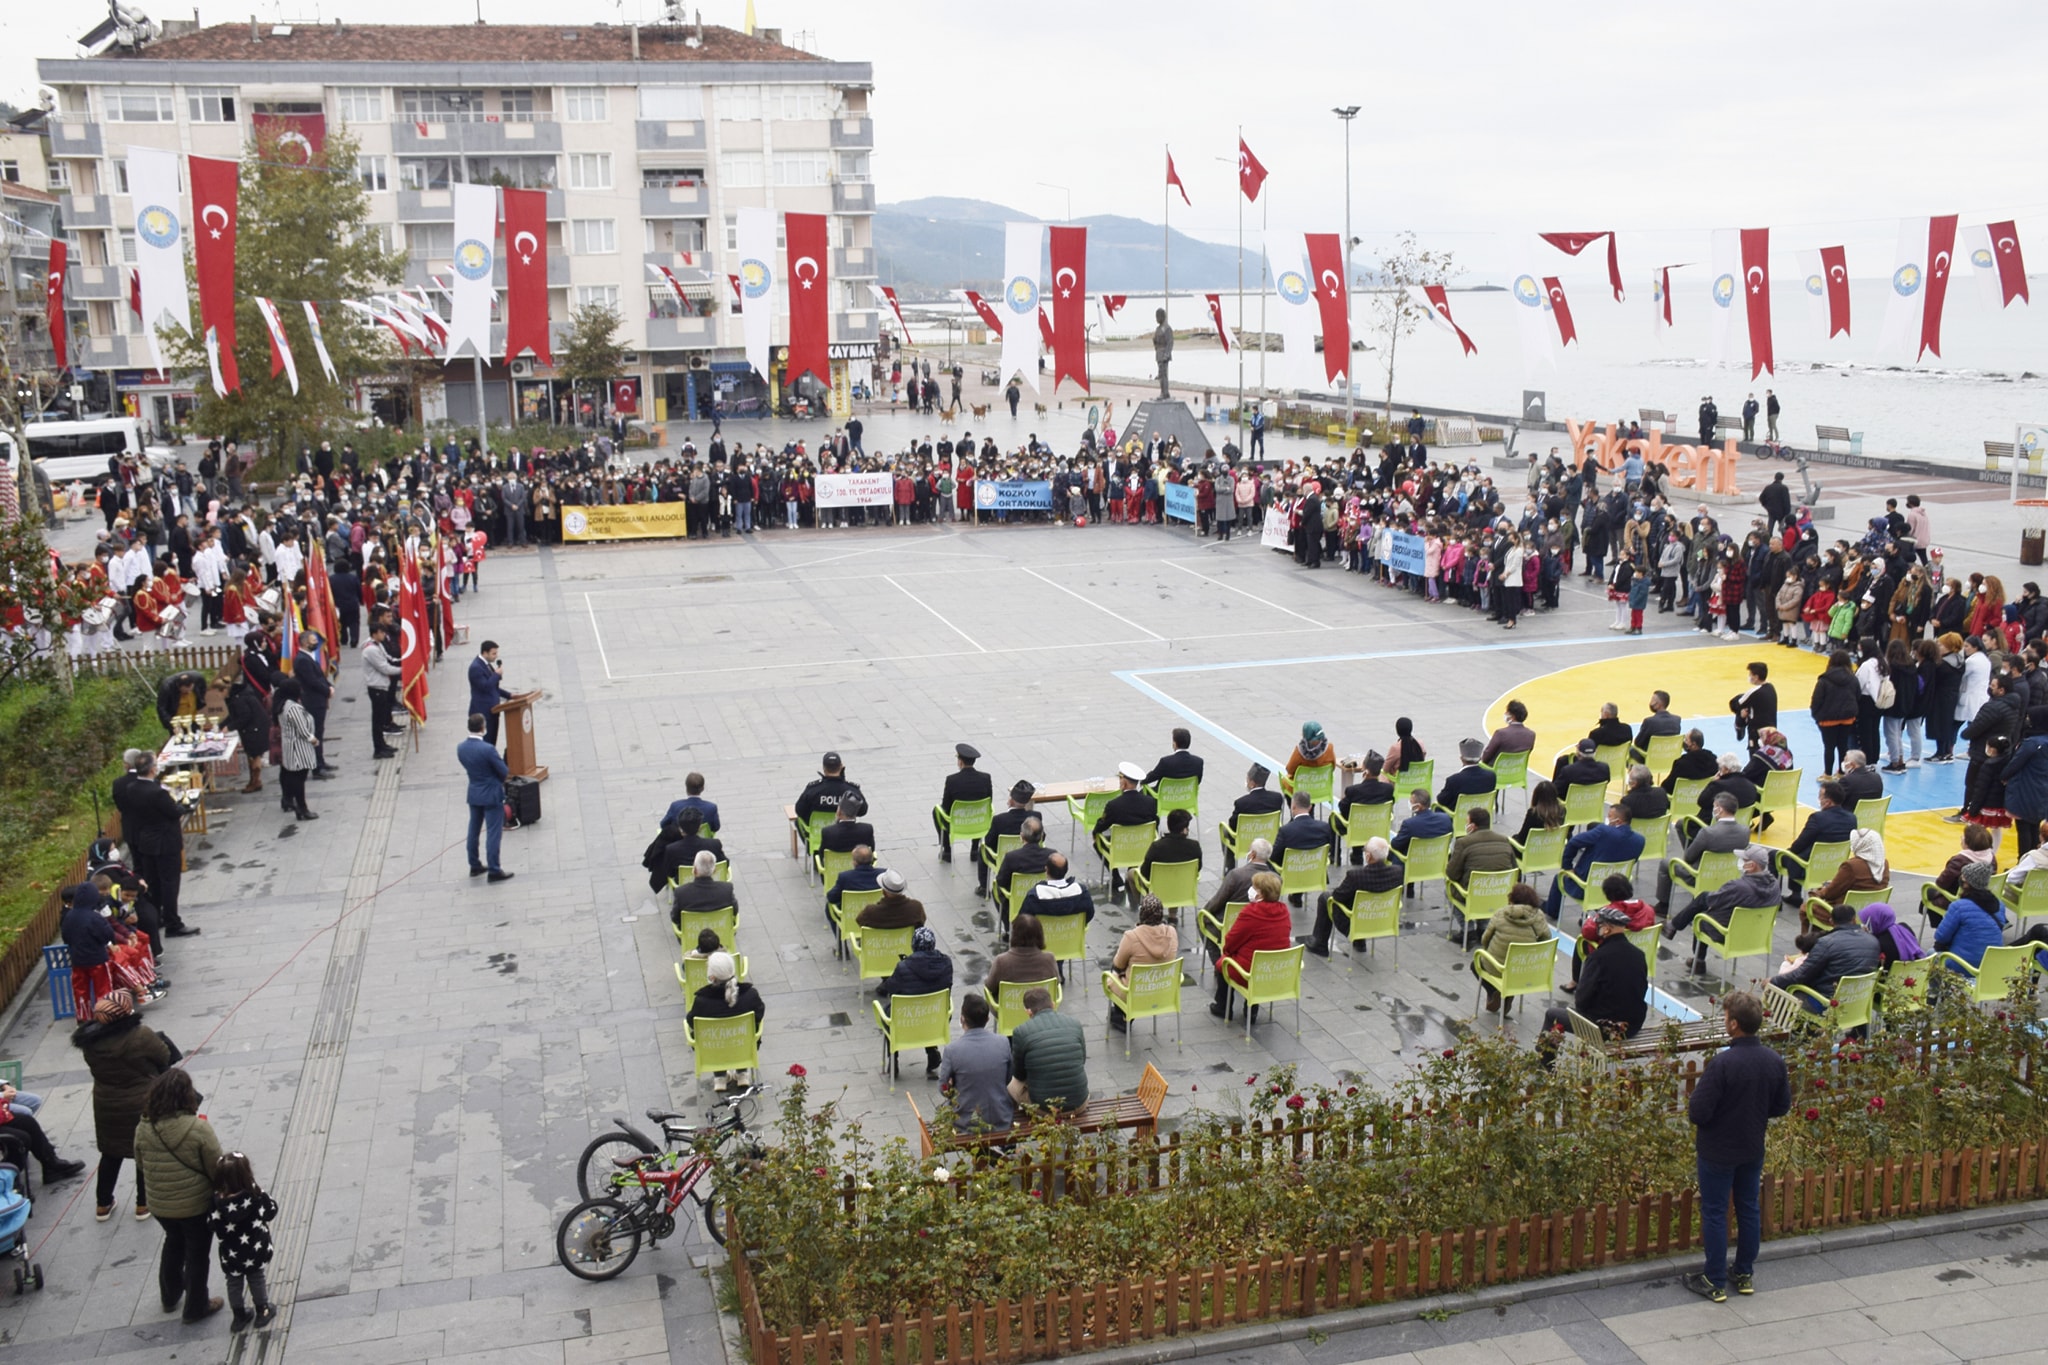 29 Ekim Cumhuriyet Bayramının 98. yıl dönümü münasebetiyle, ilçemiz Cumhuriyet Meydanında kutlama programı gerçekleştirildi.